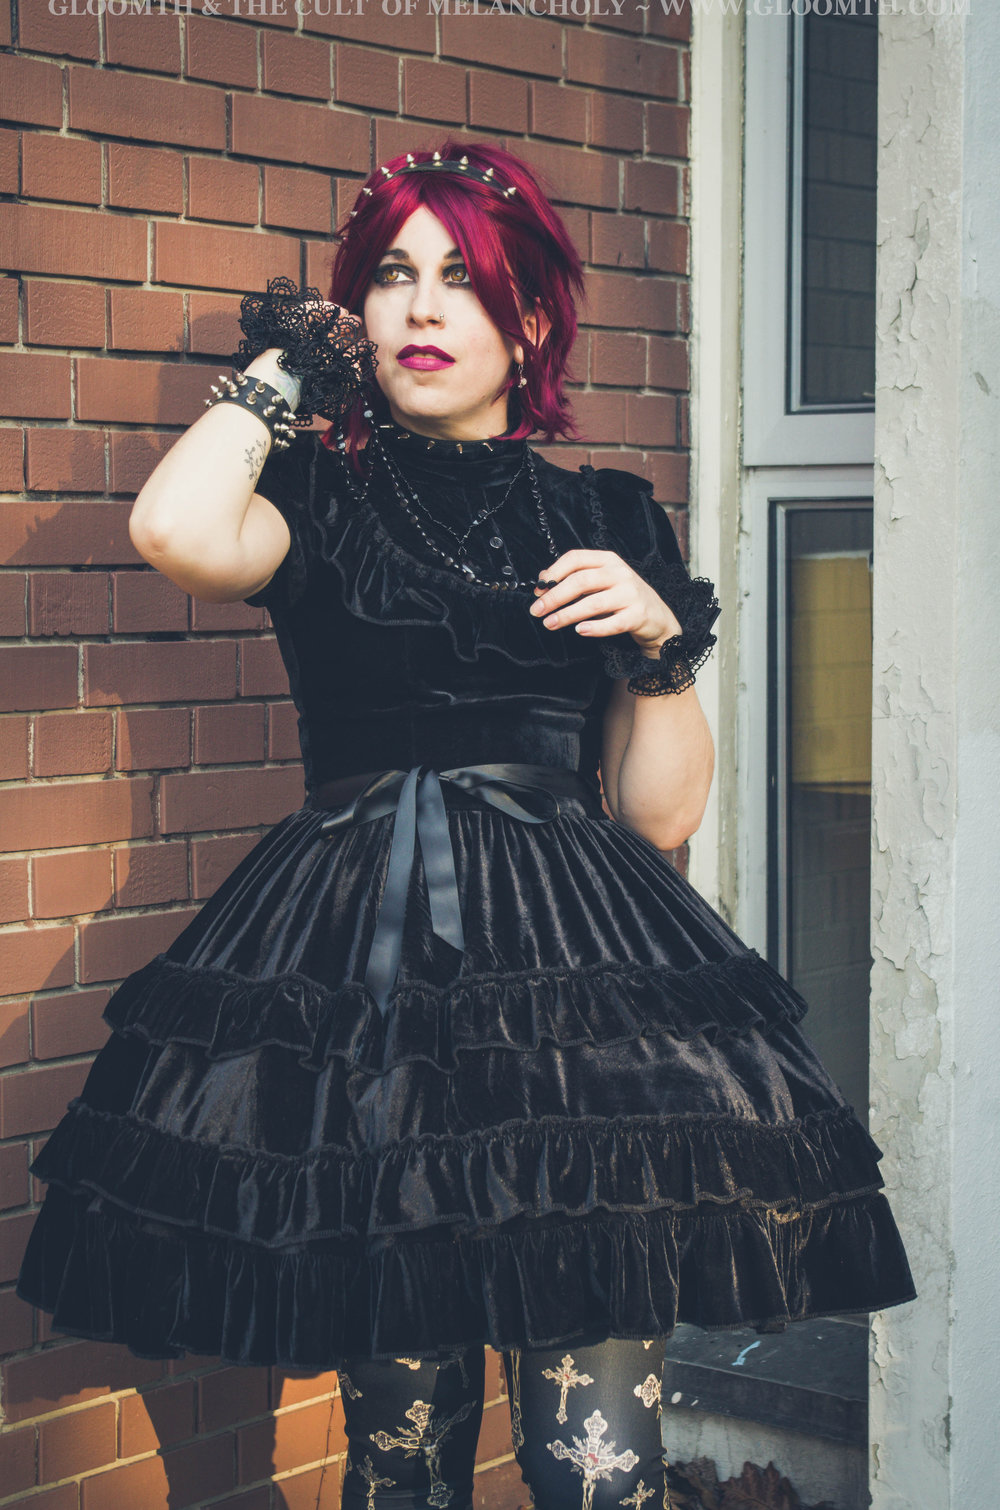 October Black Velvet Gothic Lolita — Gloomth